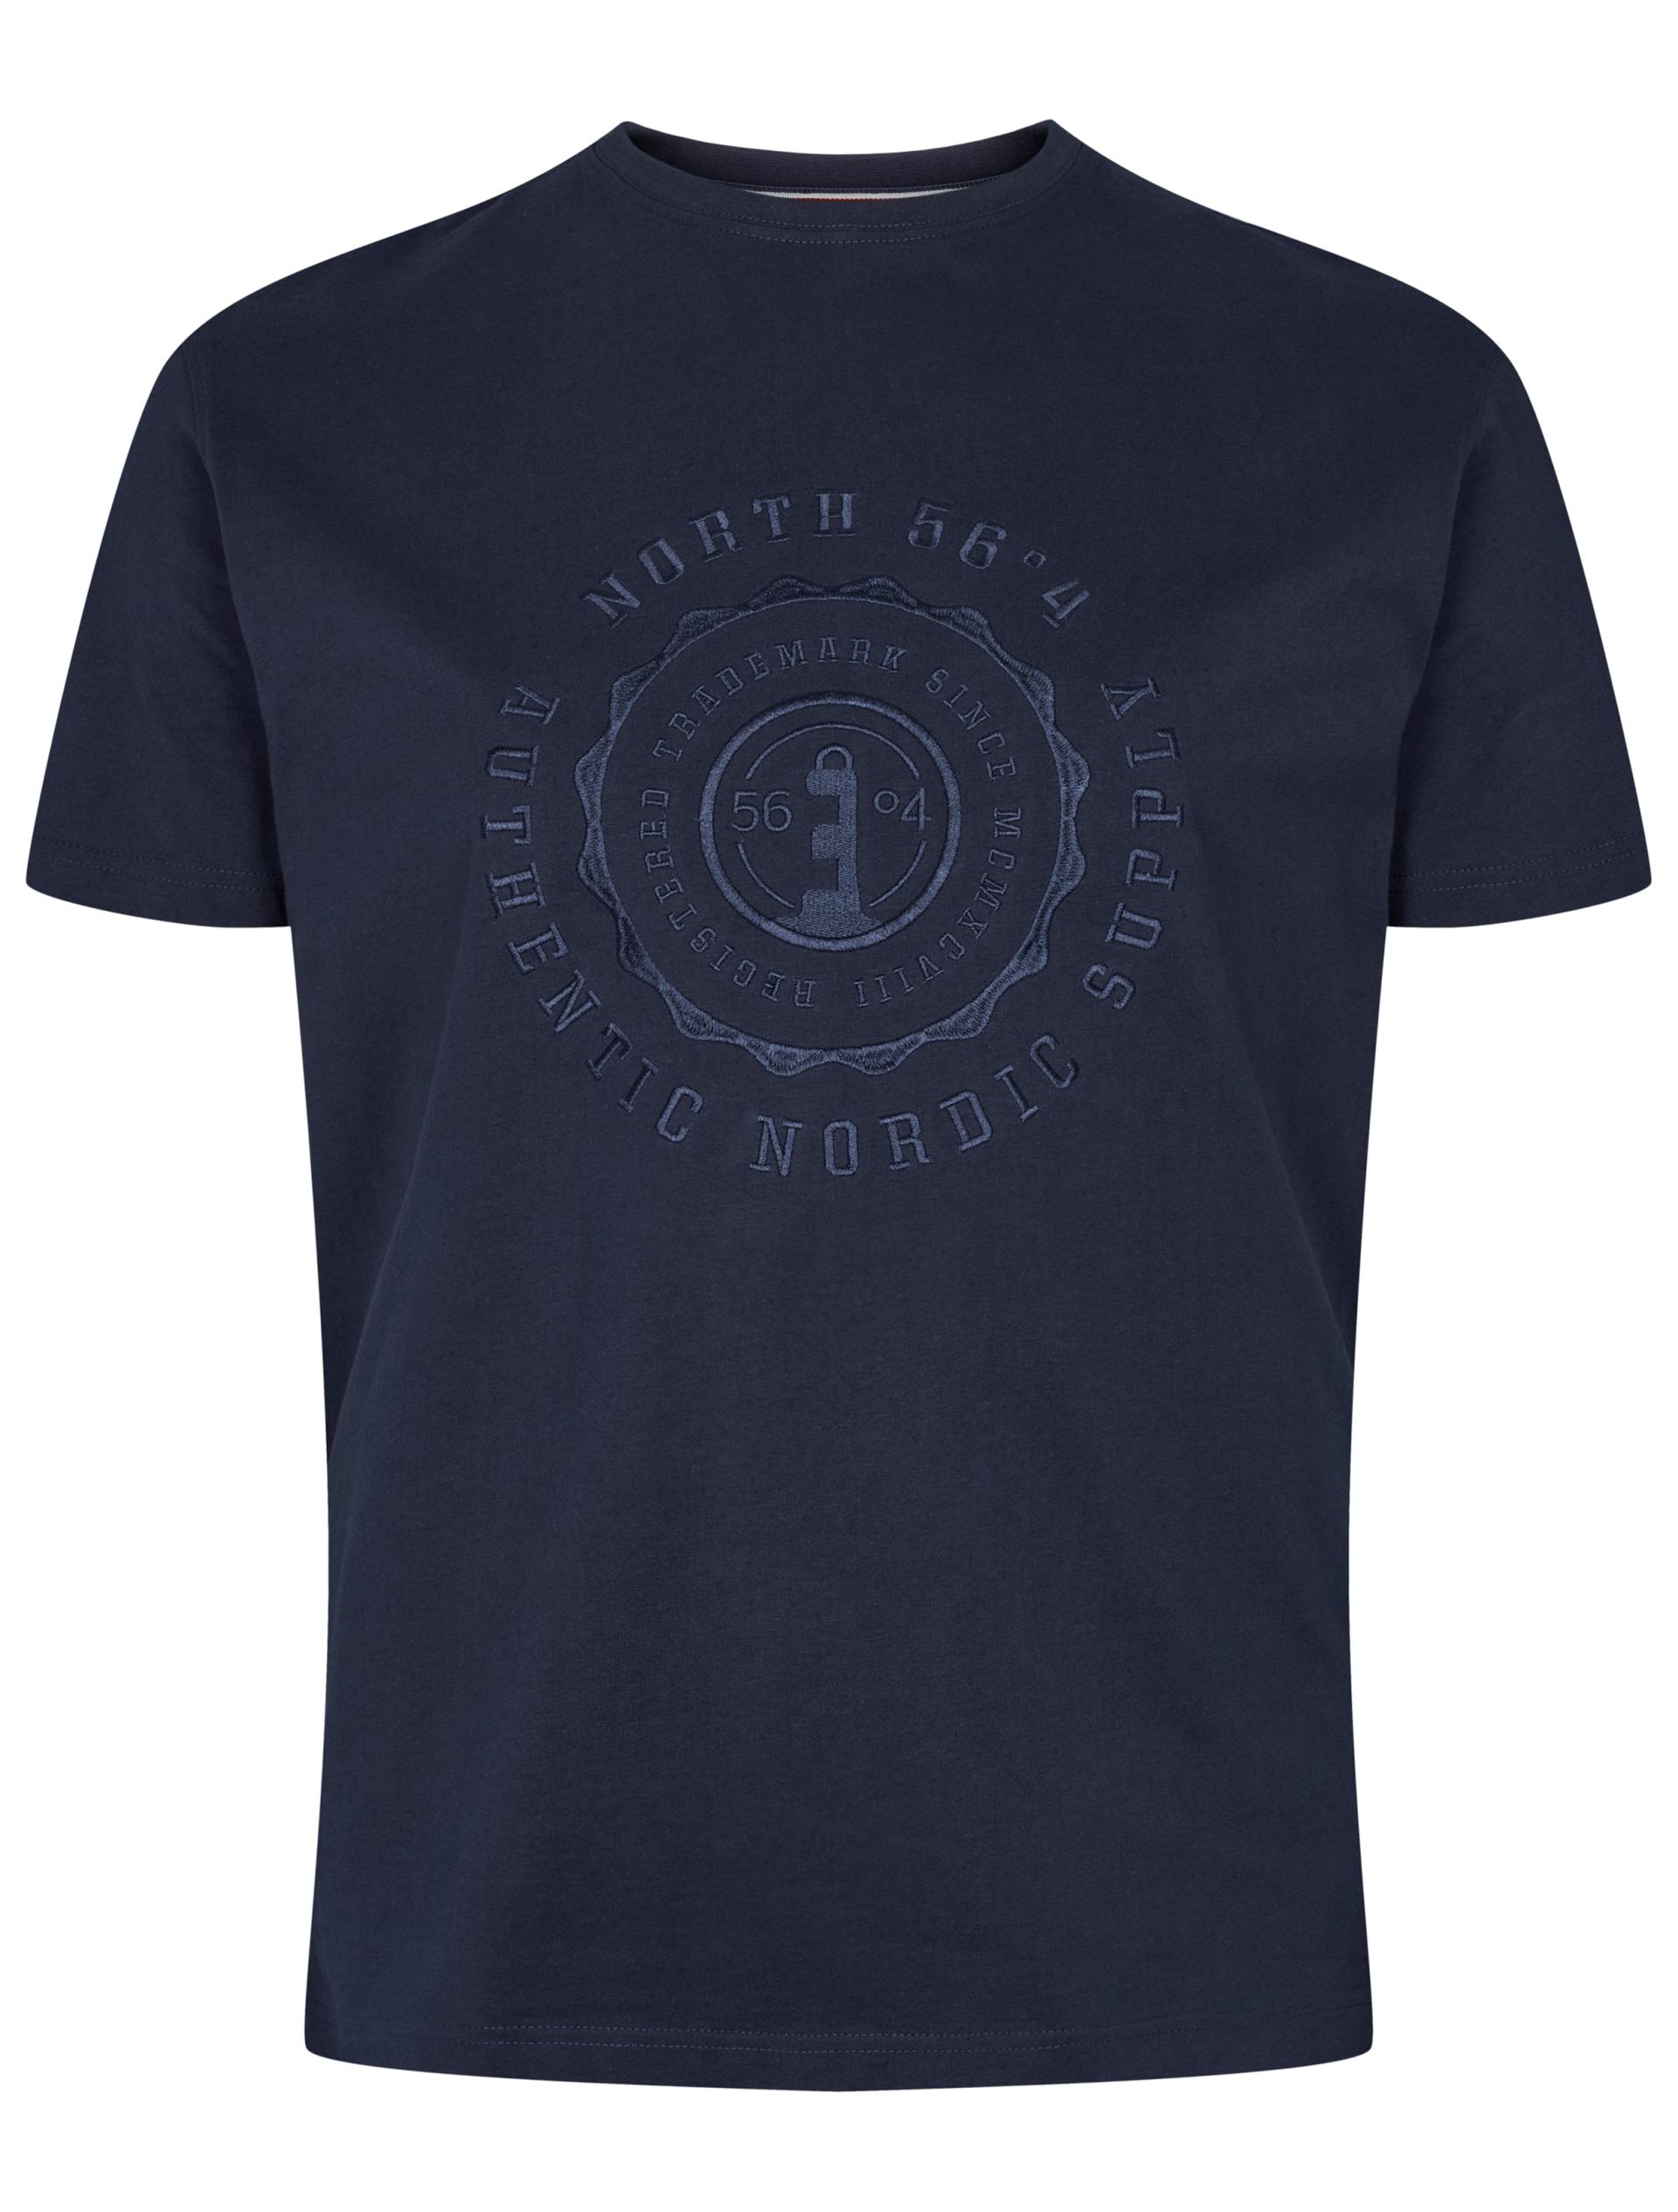 North T-shirt blå / 580 navy blue